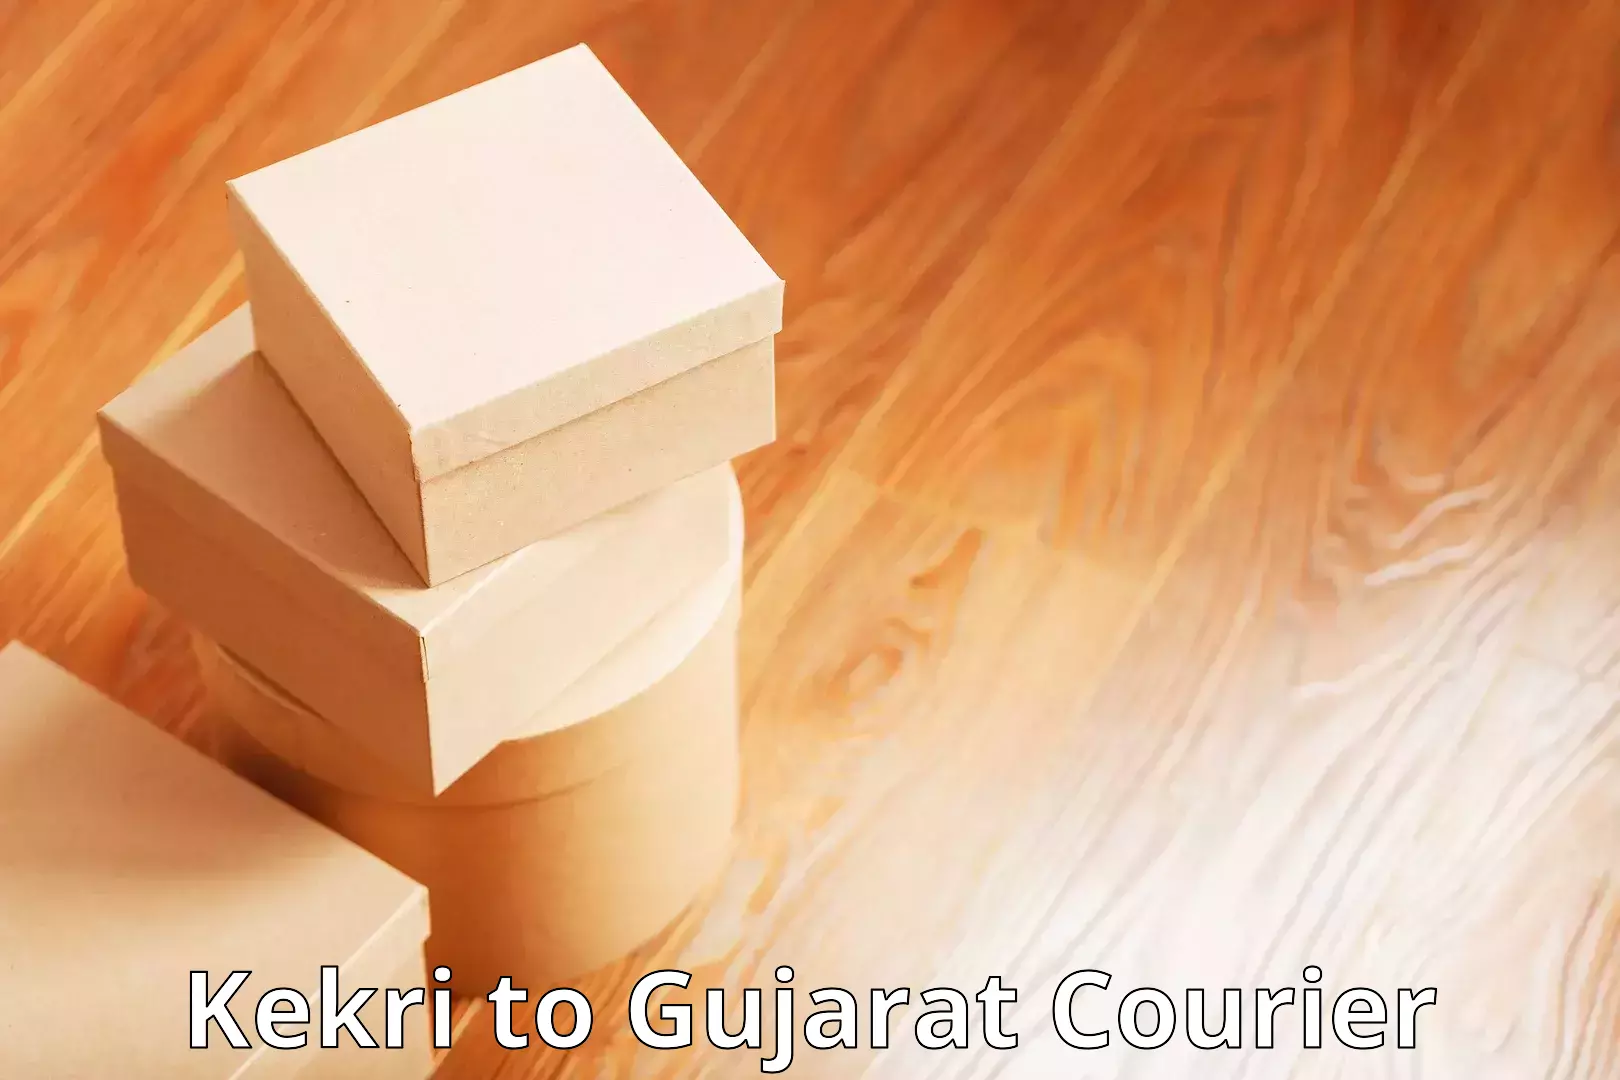 Affordable parcel service Kekri to Gujarat